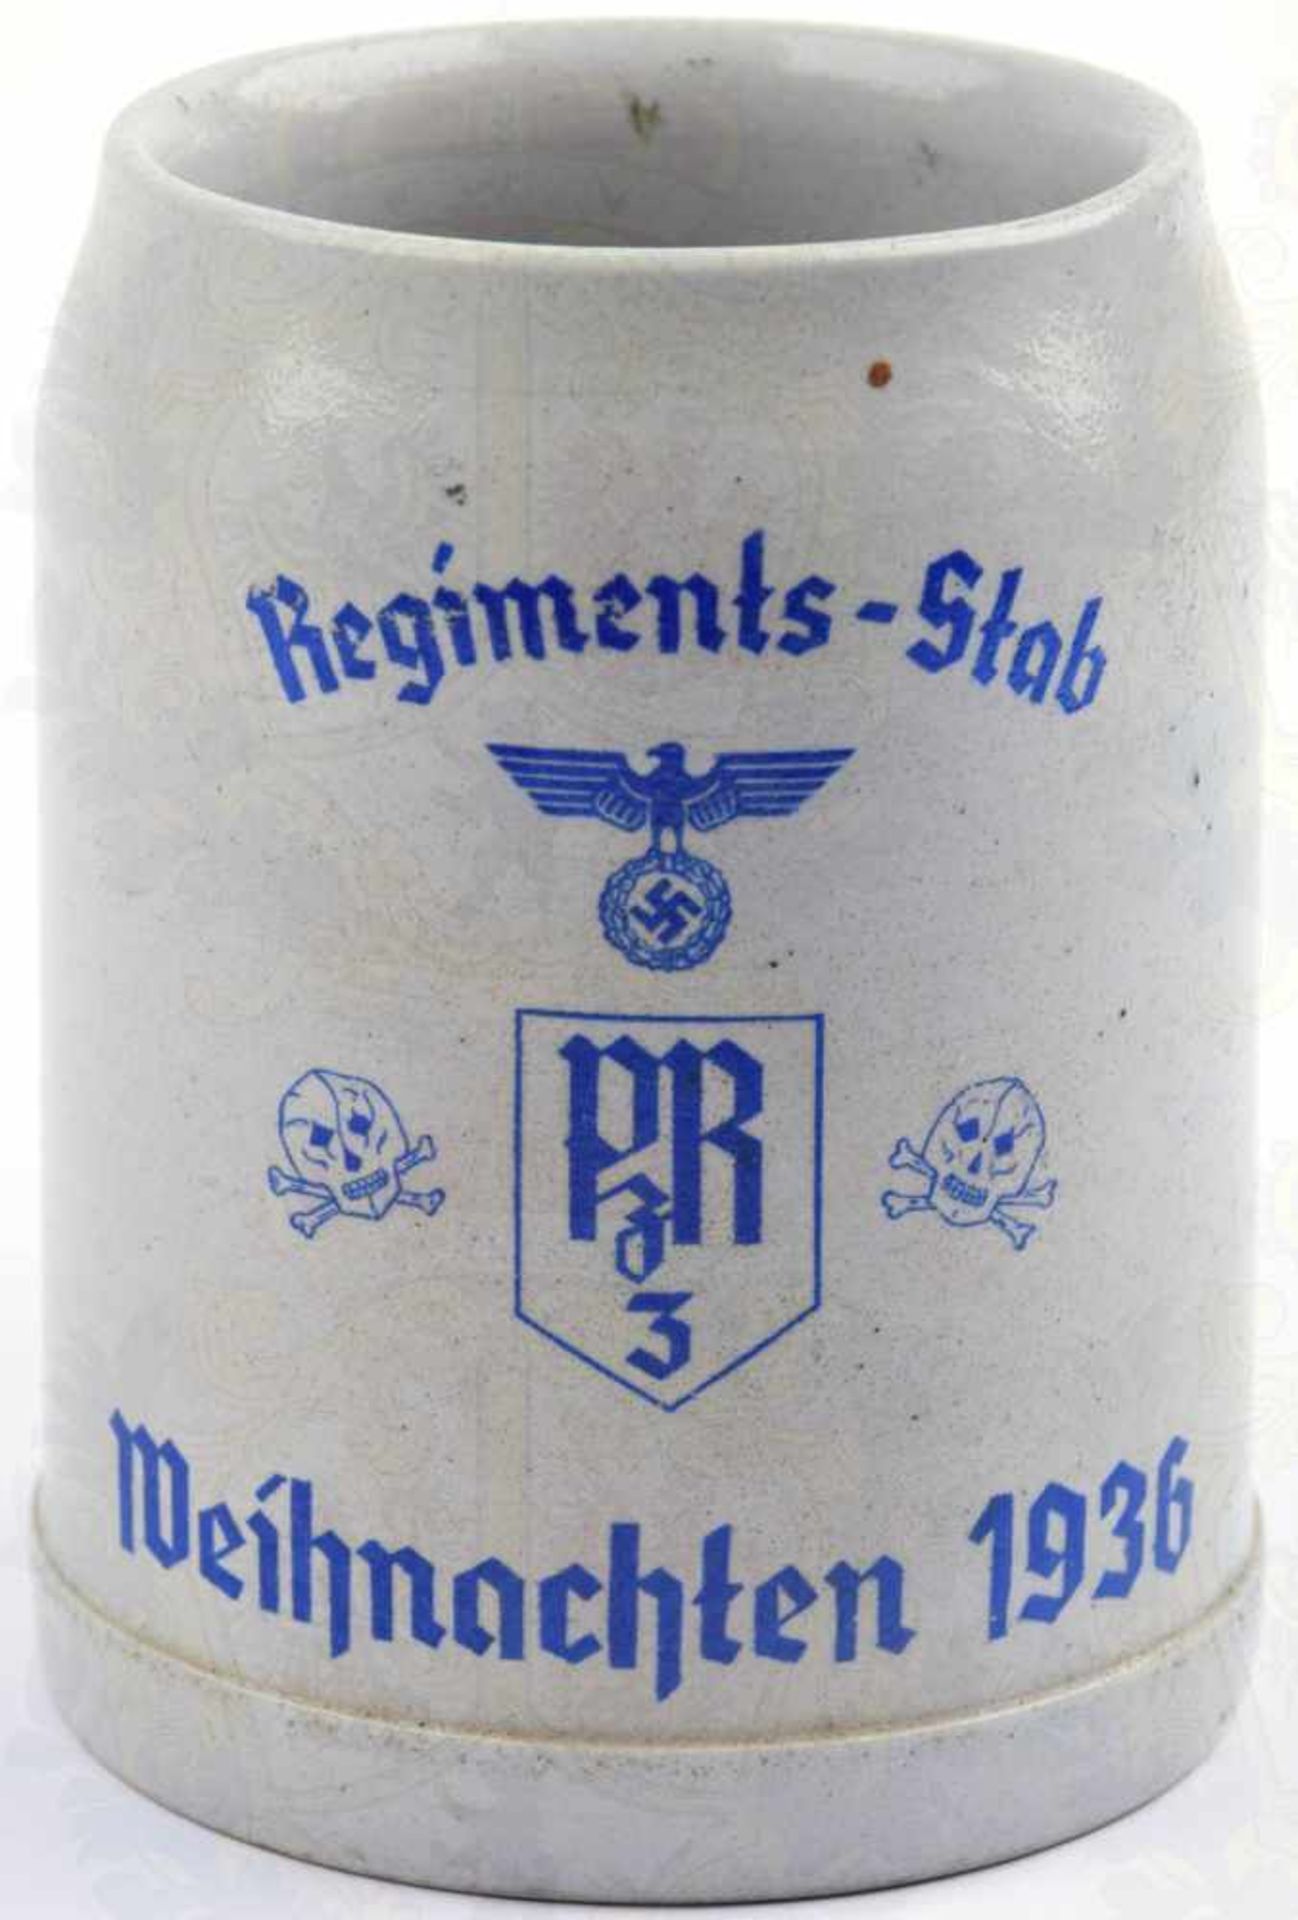 ERINNERUNGSKRUG REGIMENTS-STAB, Pz.-Rgt. 3 Weihnachten 1936, zeitgenössischer Steinzeugkrug, 0,5 L.,